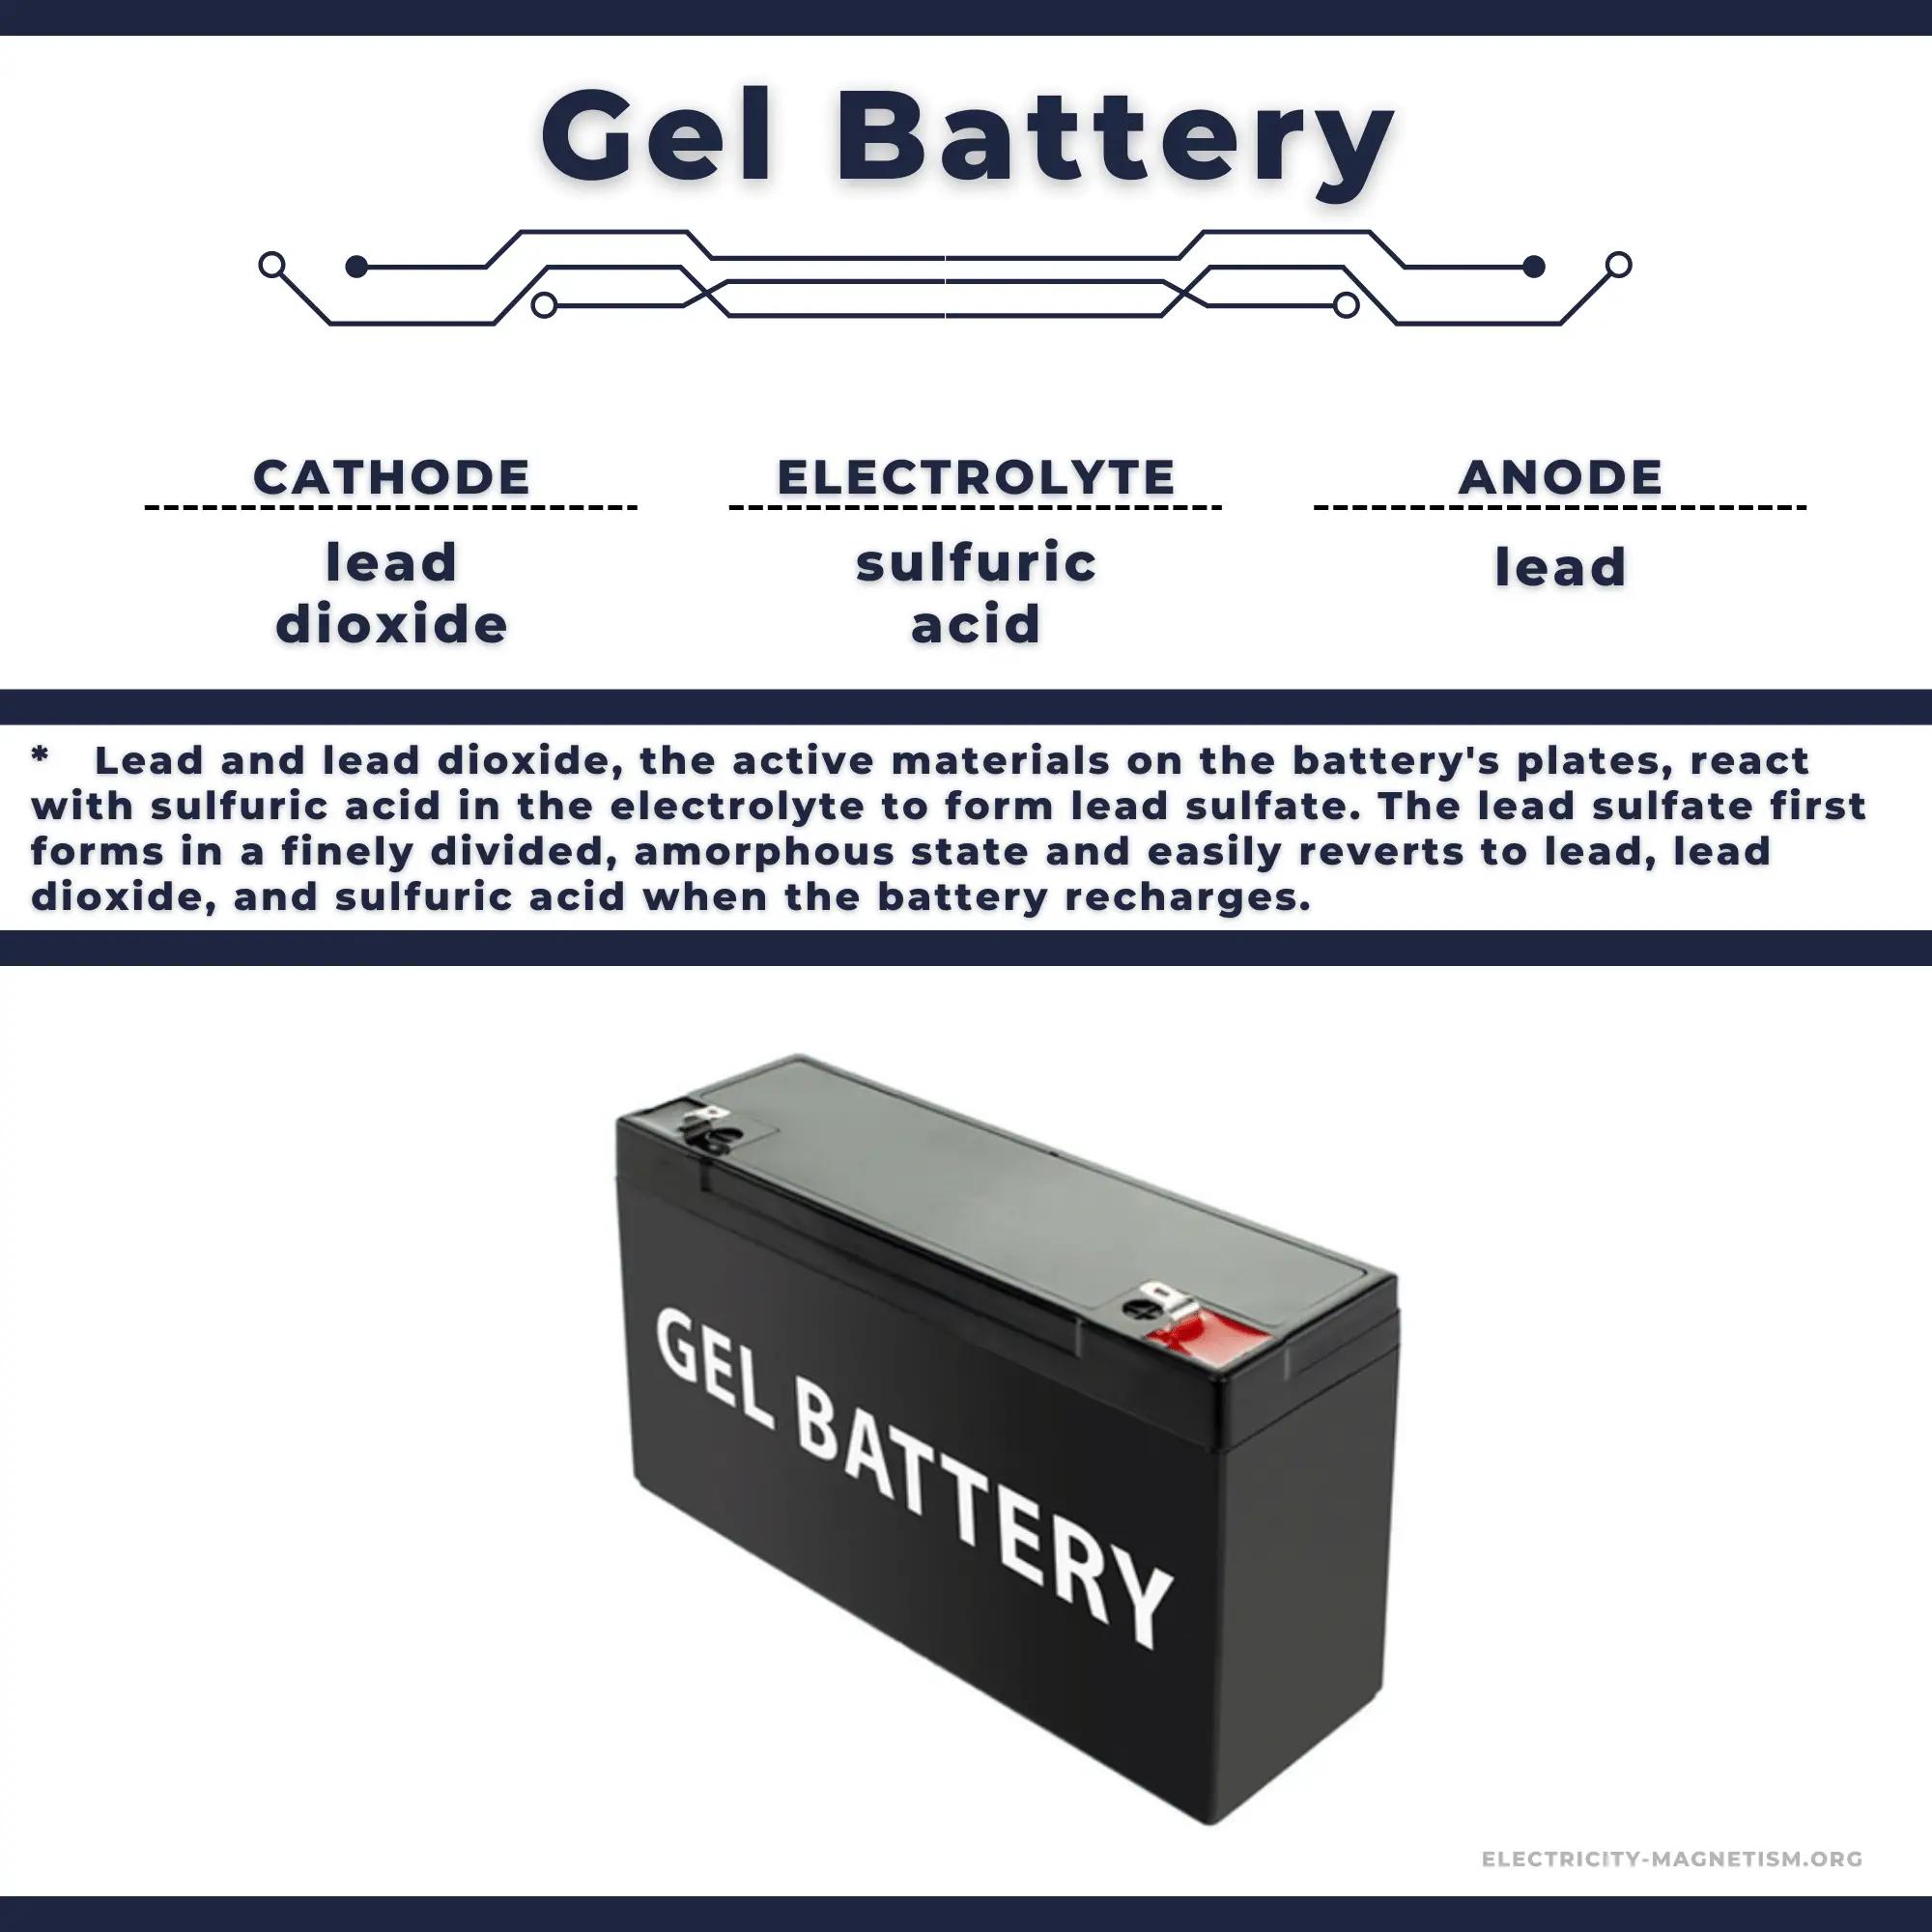 baterias de gel definicion - Qué son las baterías secas AGM y gel